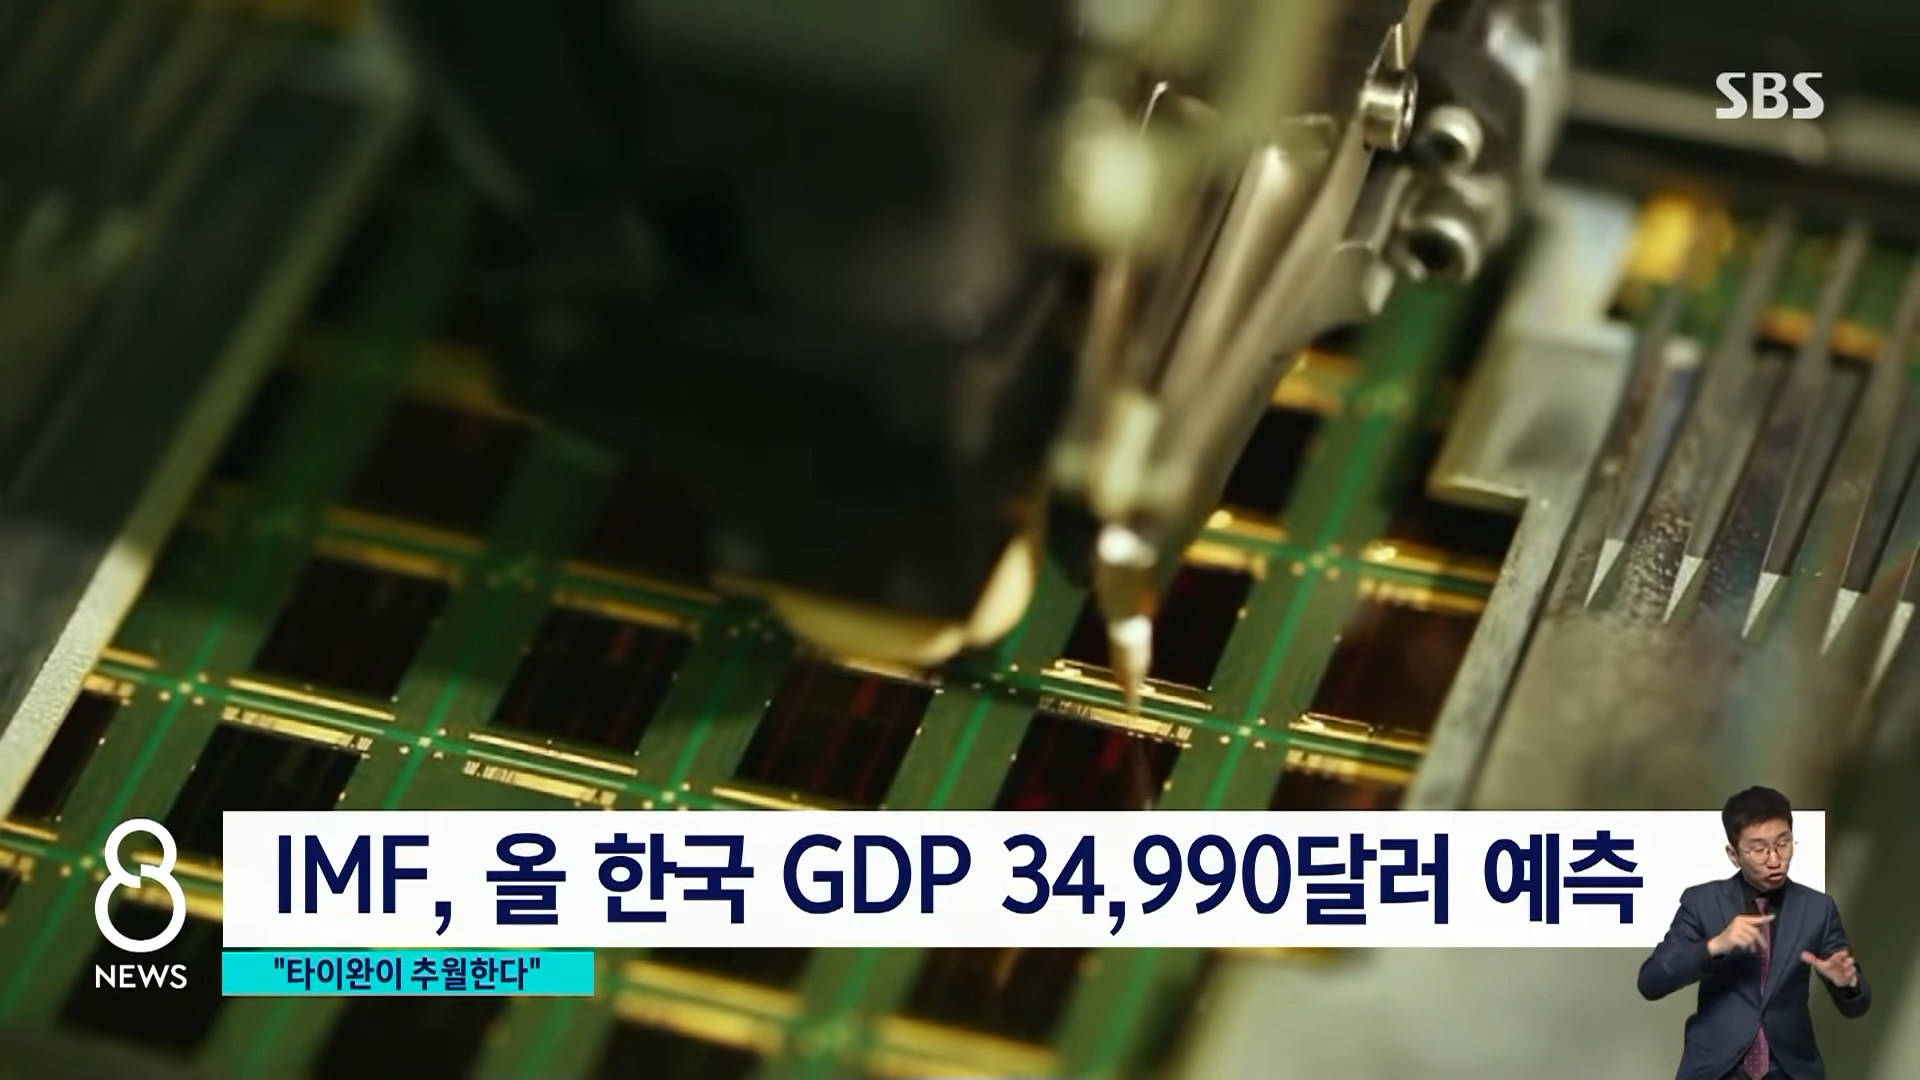 ',1인당 GDP', 타이완에 19년 만 역전 전망…그 이유는 _ SBS 0-26 screenshot.png